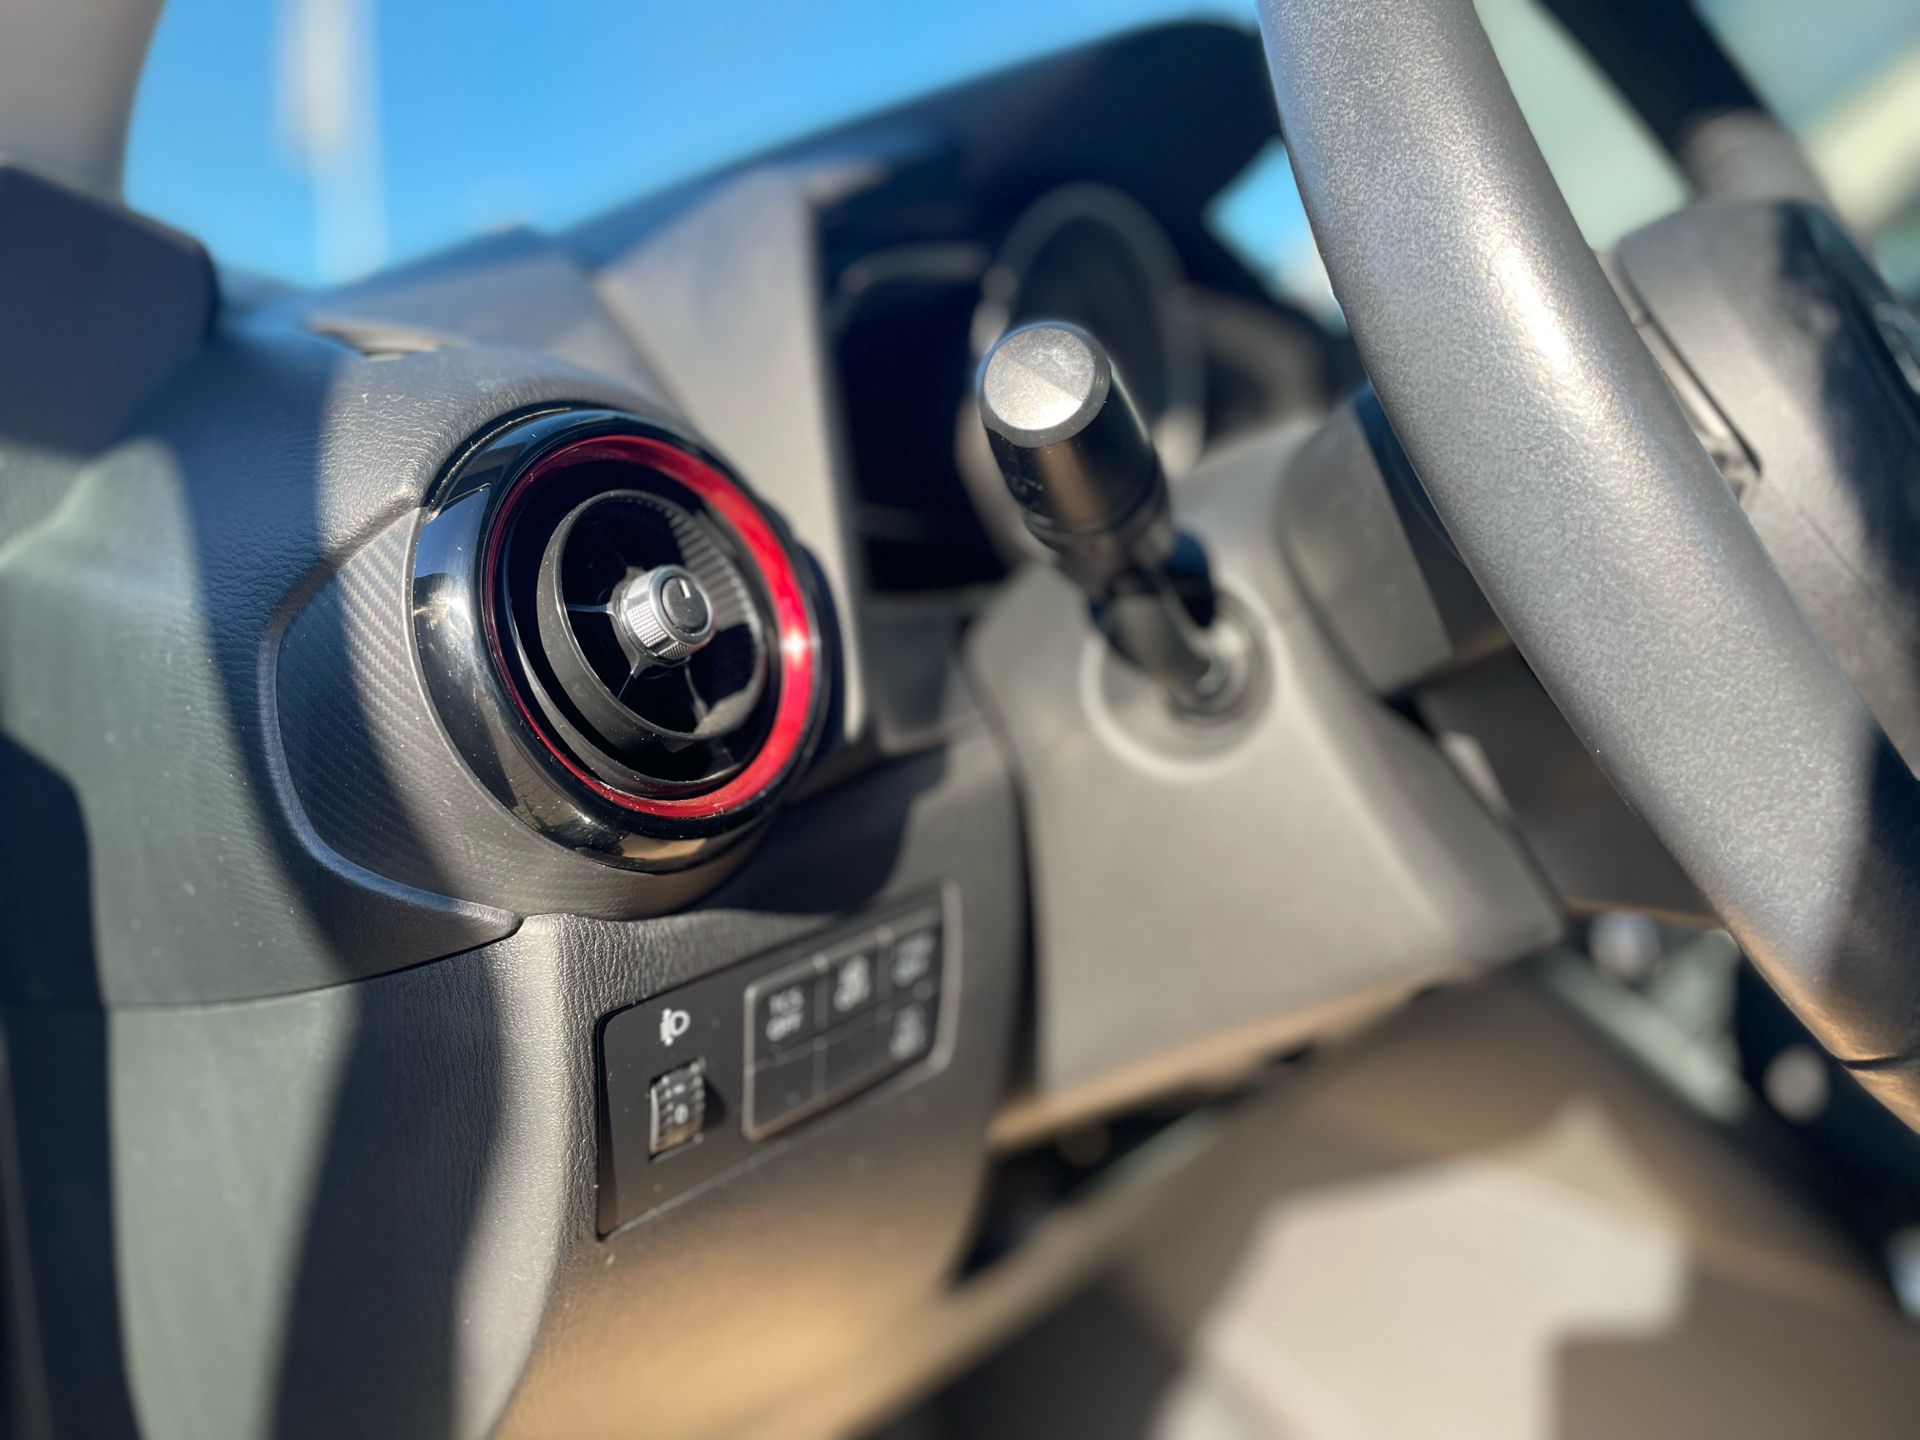 Billede af Mazda CX-3 2,0 Skyactiv-G Vision 120HK 5d 6g Aut.